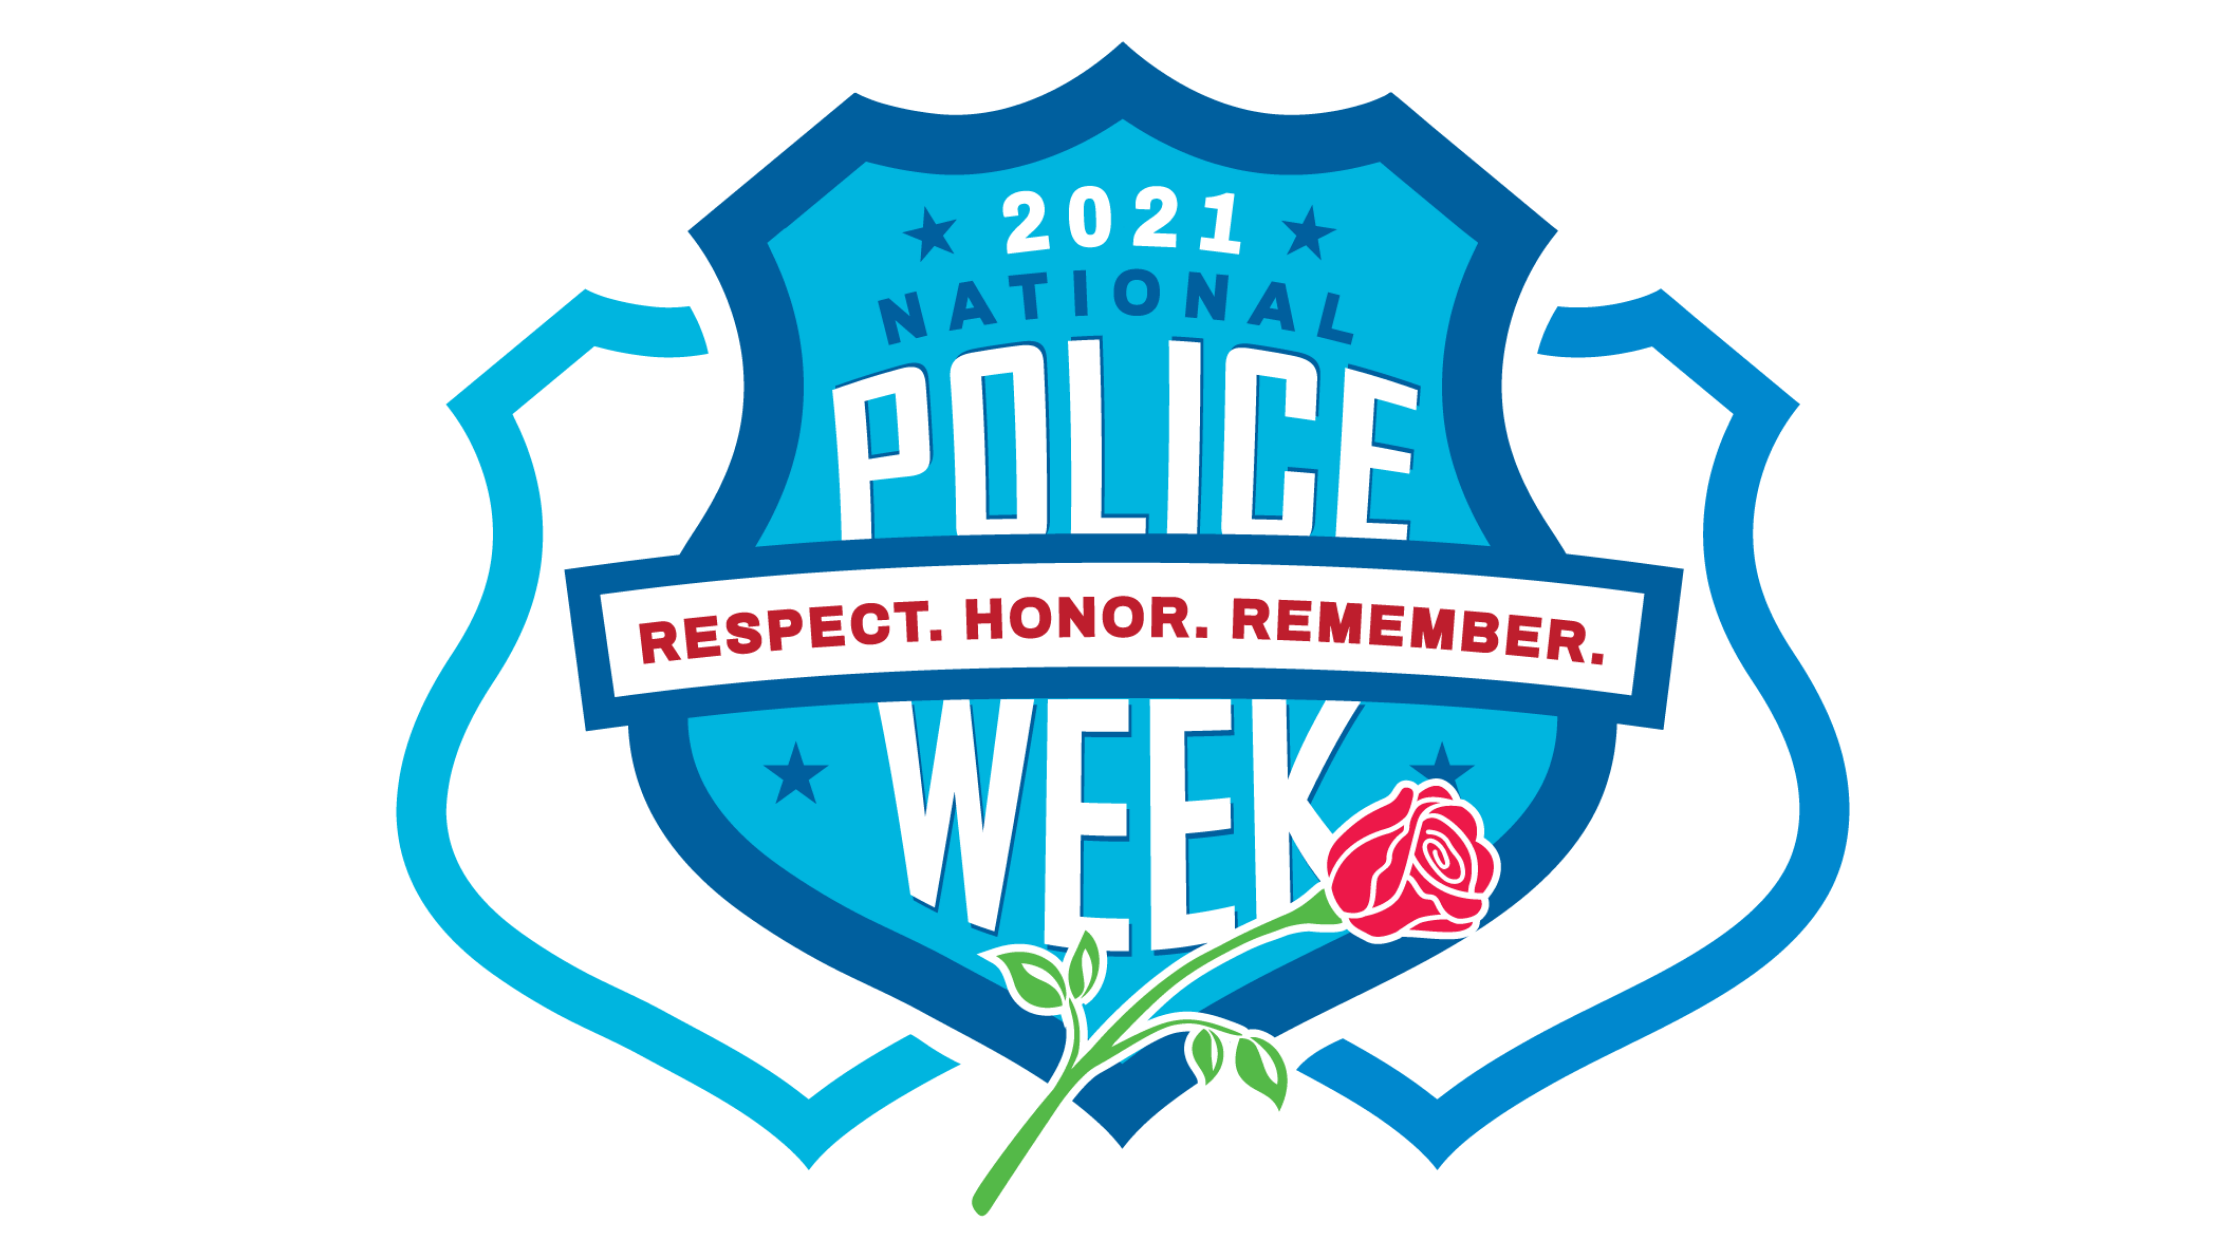 National Police Week Badge